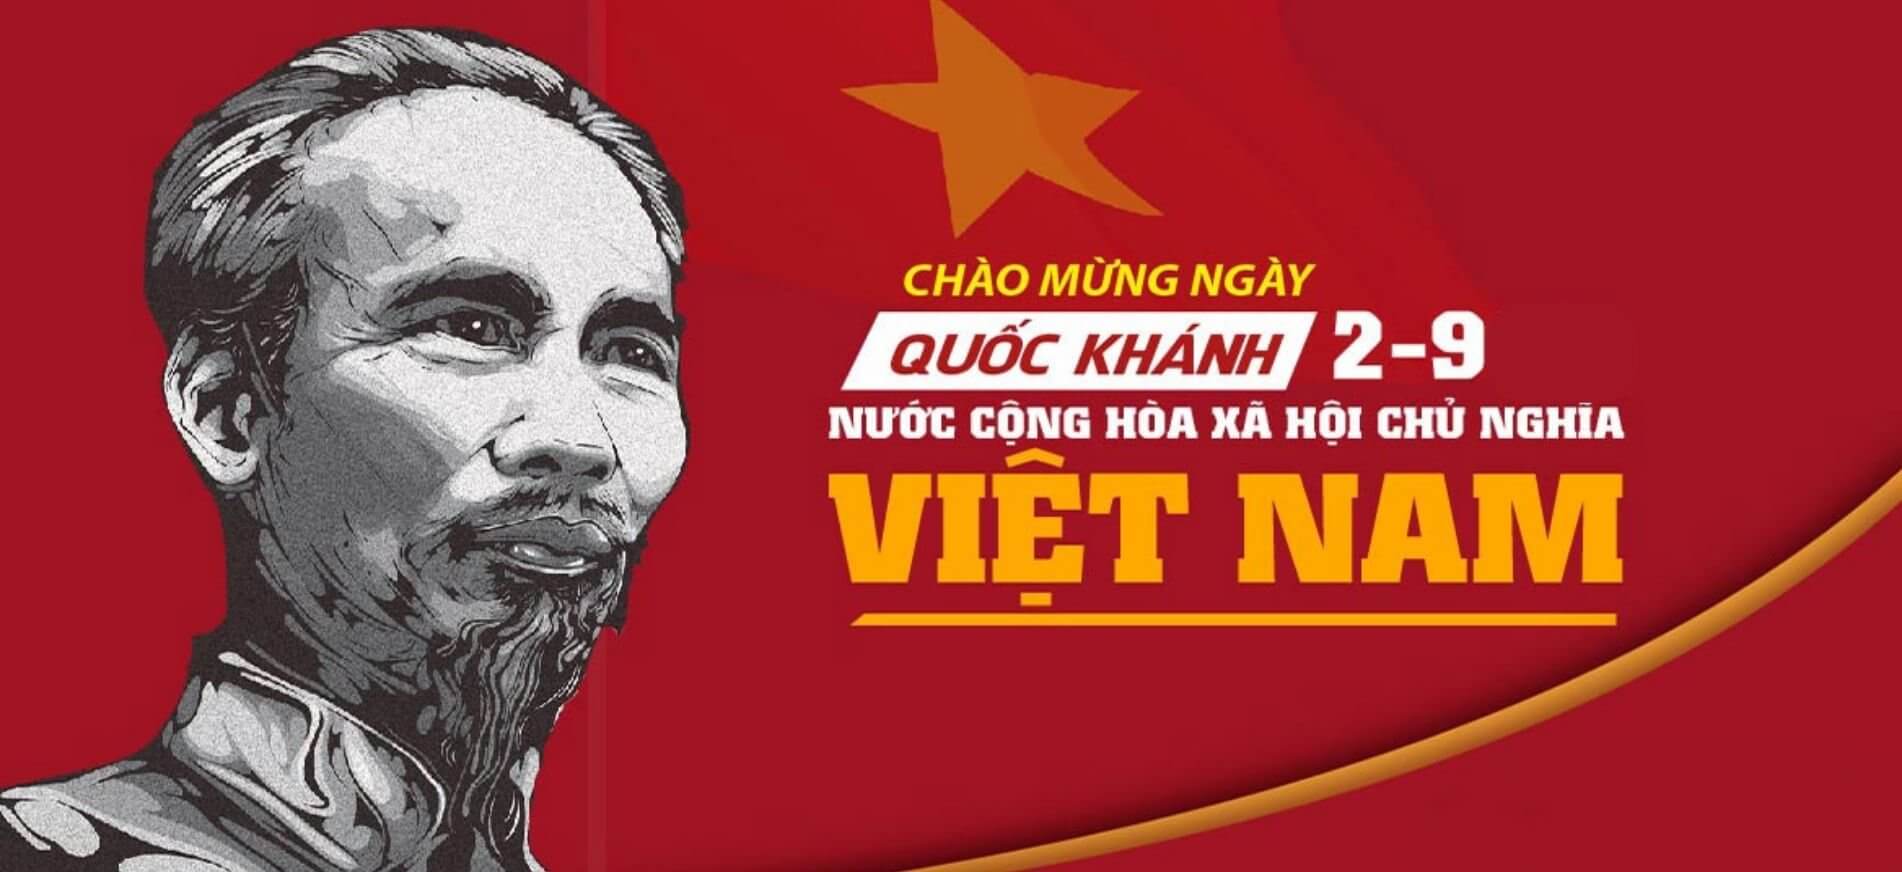 Tầm quan trọng của ngày 2/9 đối với người dân Việt Nam 